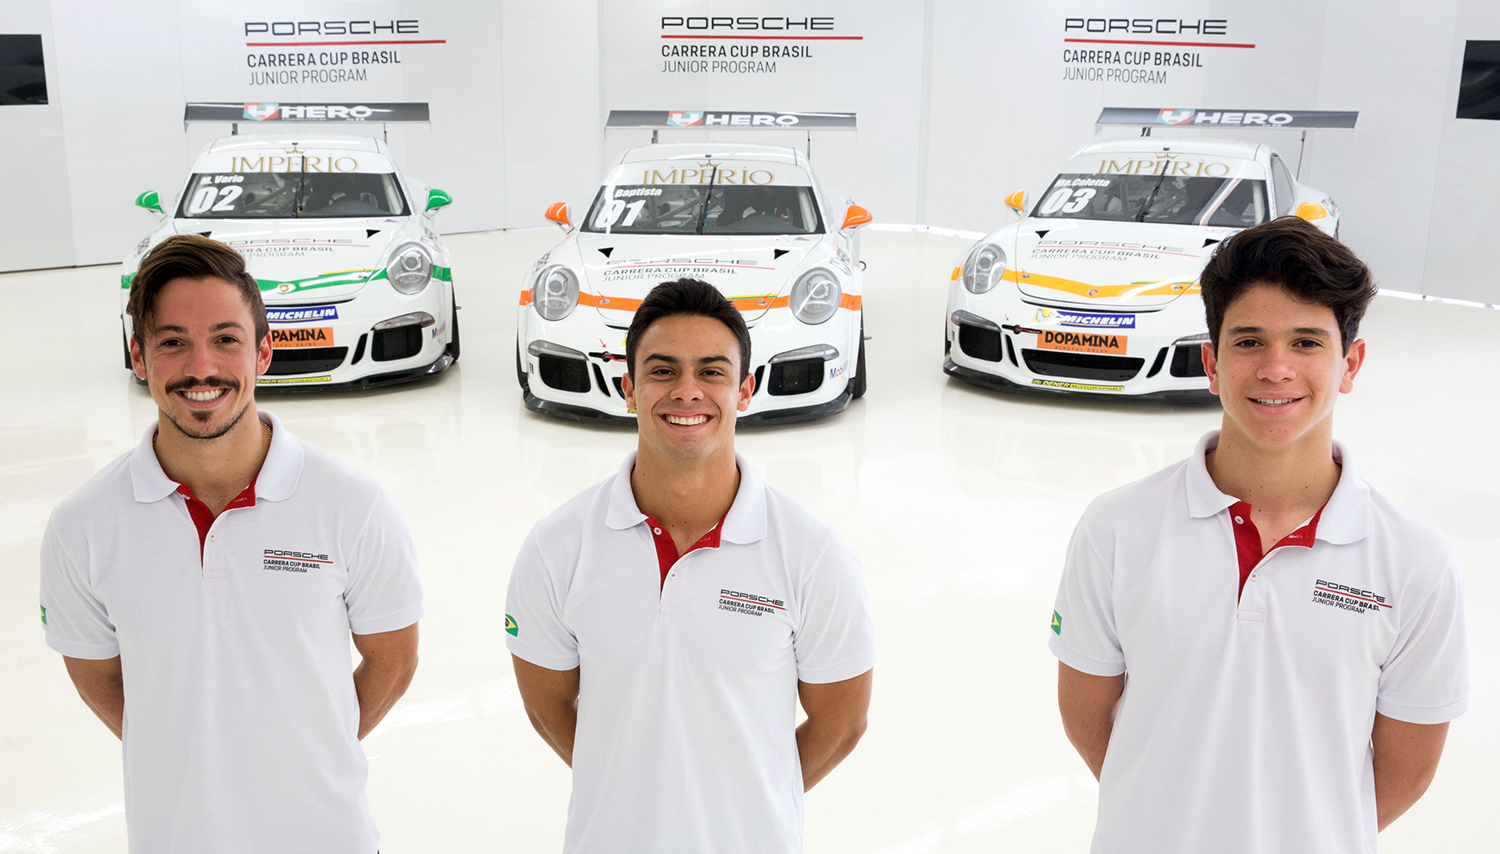 Vitor Baptista, Marcus Vario e Marcel Coletta são os vencedores do Porsche Carrera Cup Junior Program